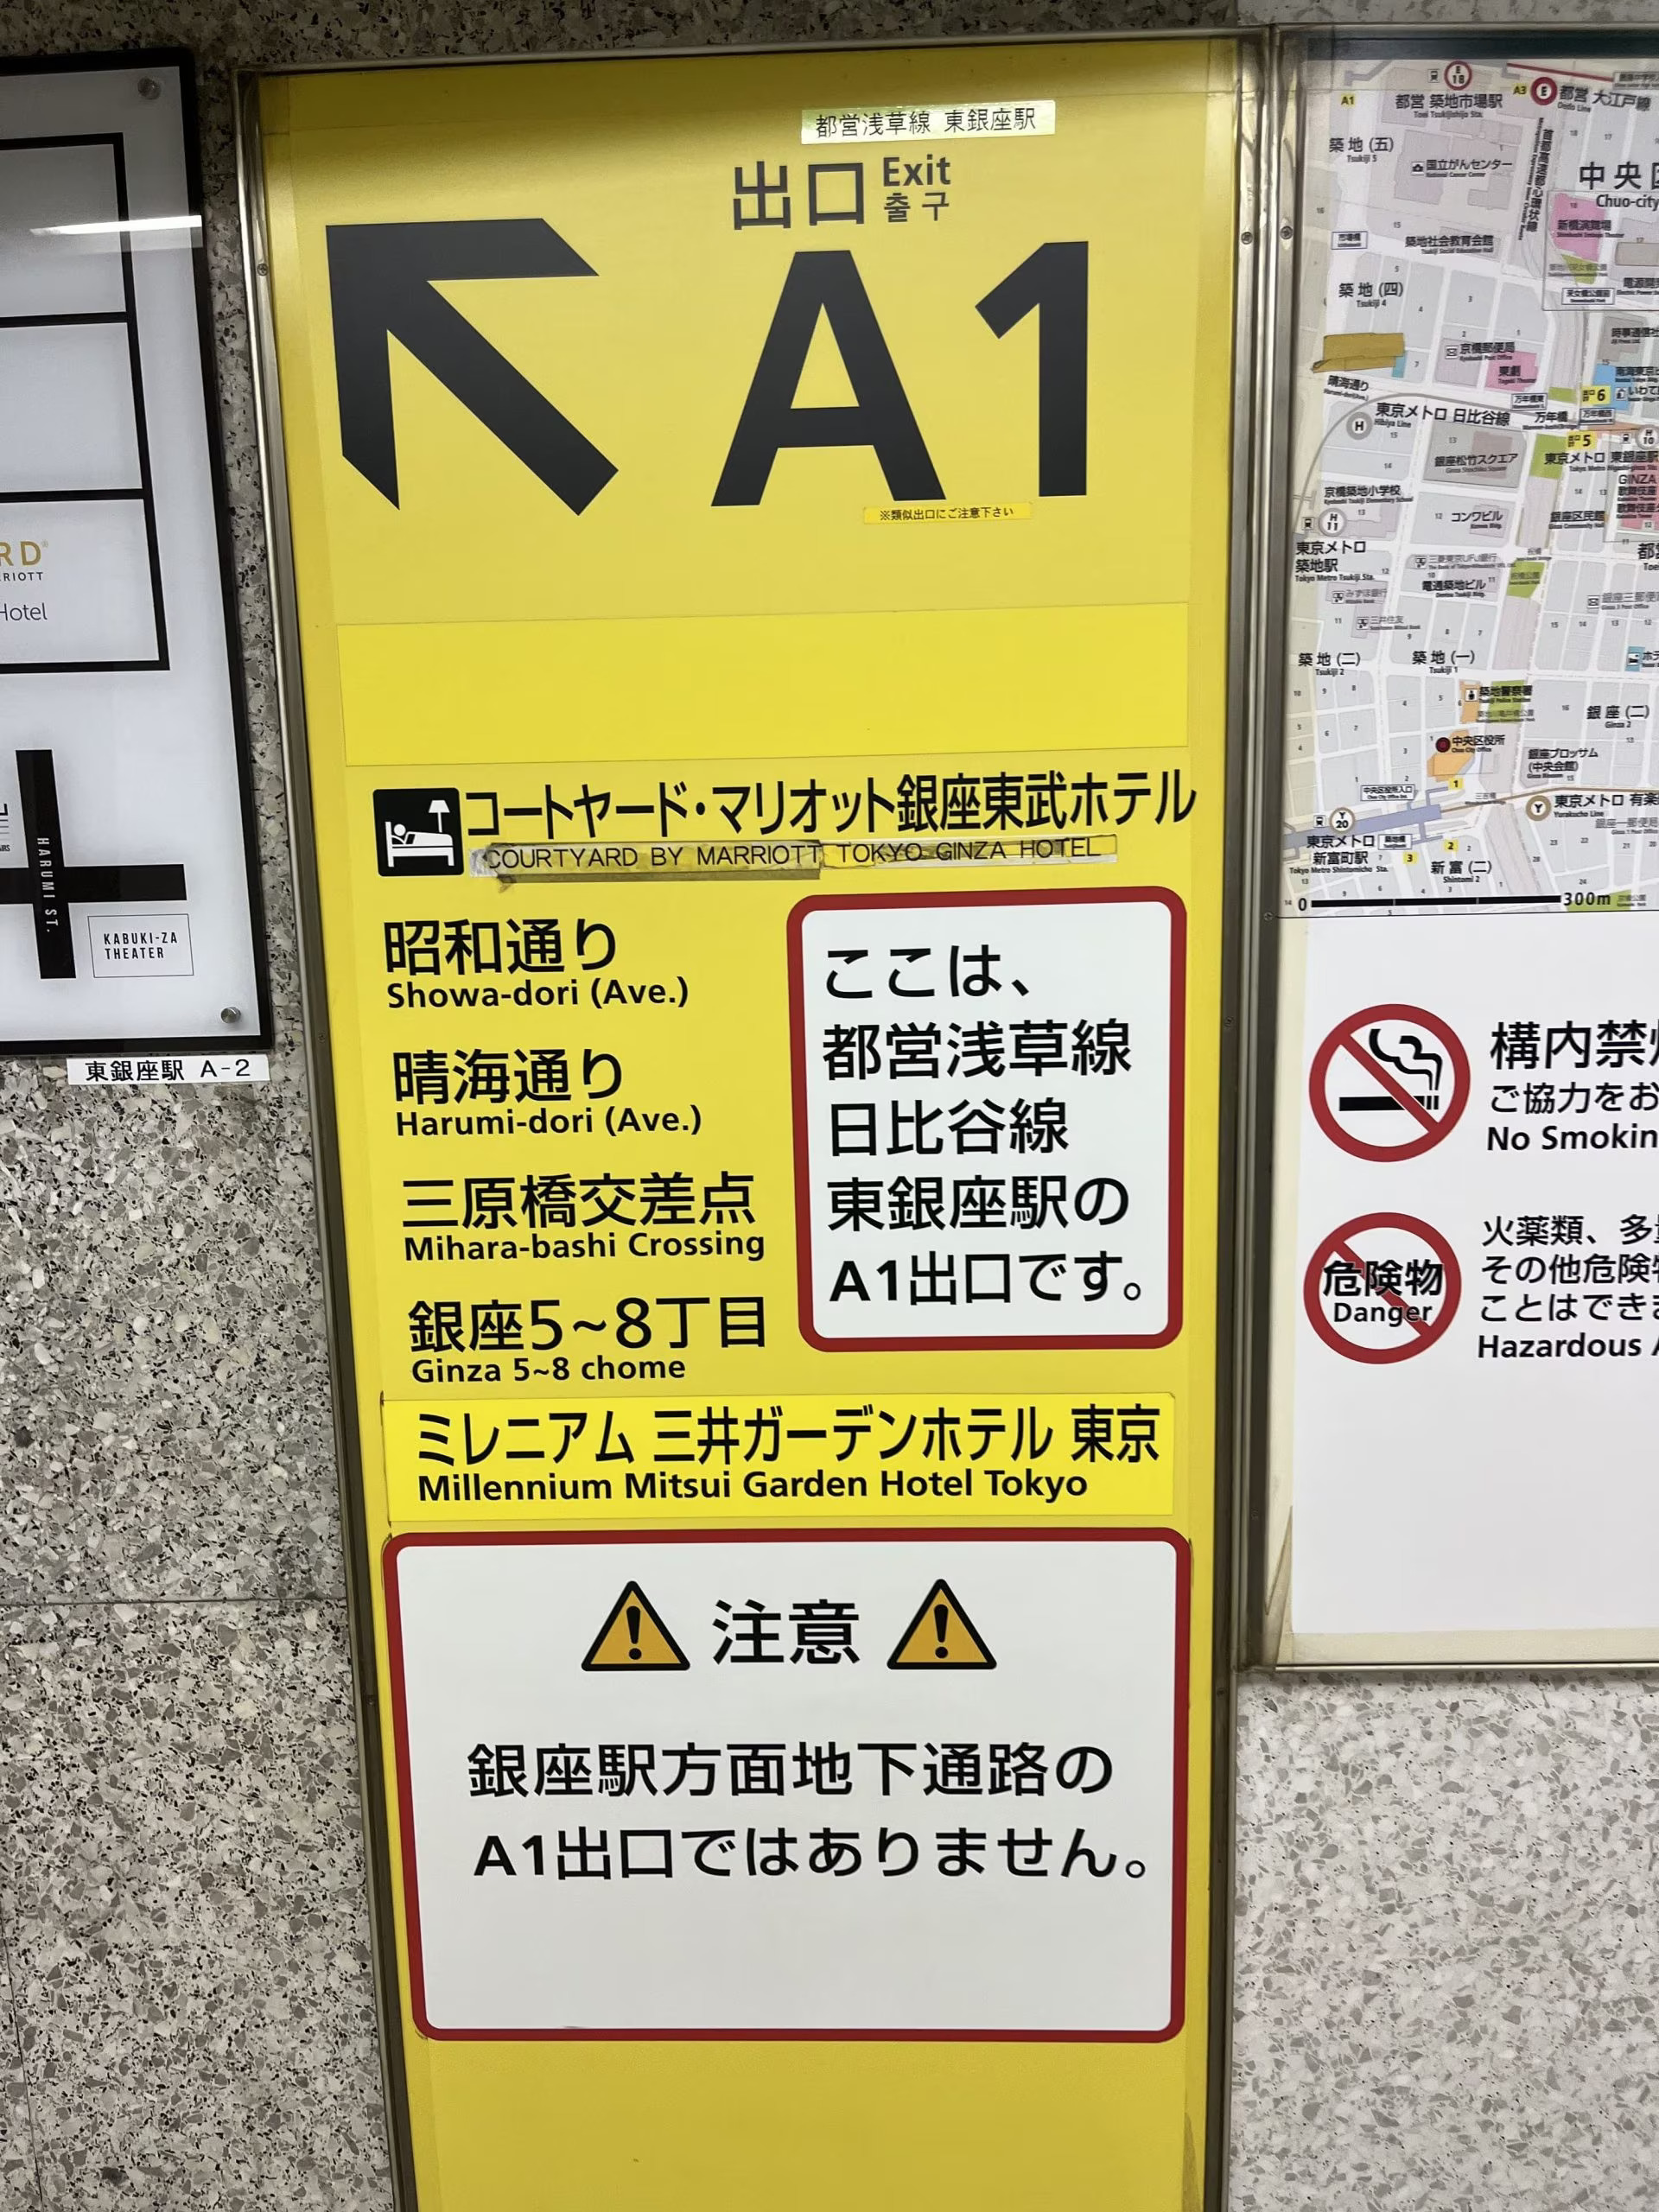 東銀座駅に到着されましたら【A1出口】より地上にお上がりください